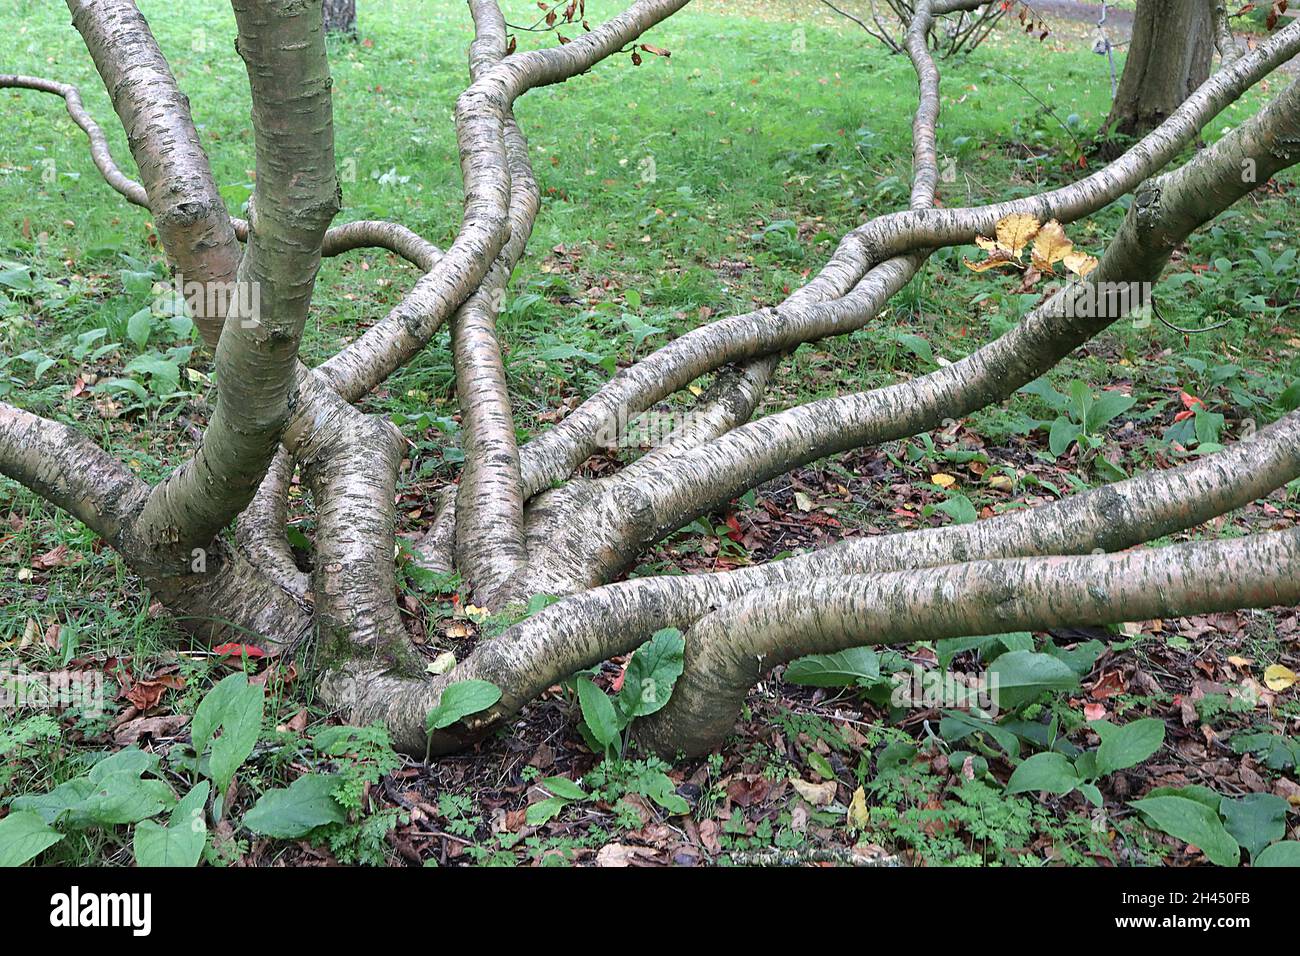 Betula medwediewii bouleau transcaucasien – feuilles jaunes et brunes sur des branches ondulées avec des lenticelles, octobre, Angleterre, Royaume-Uni Banque D'Images